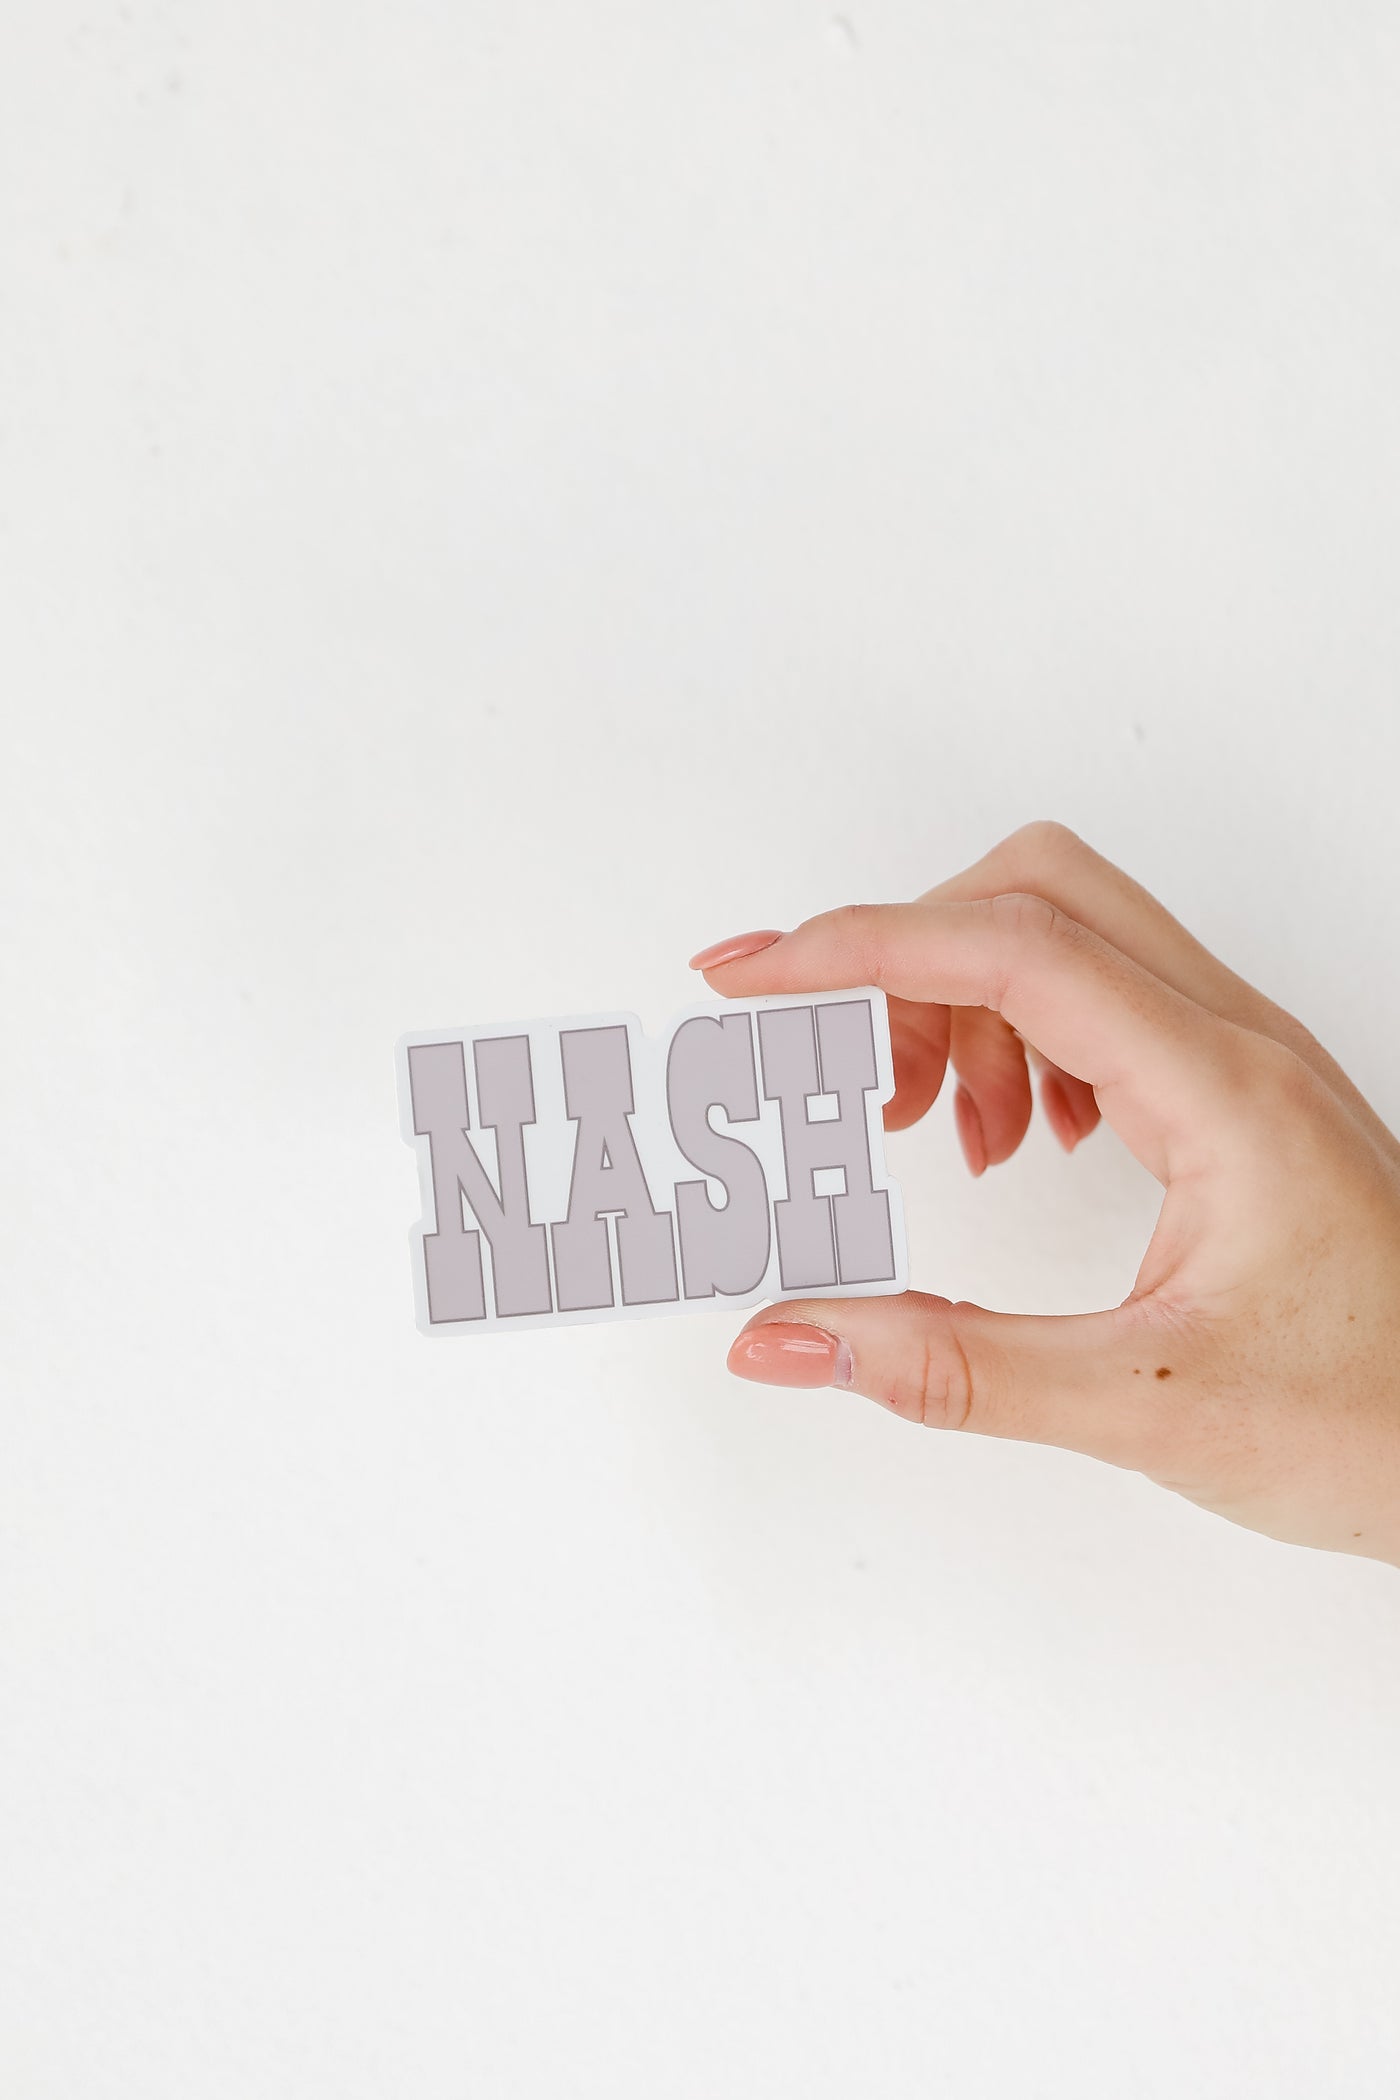 Nash Sticker close up